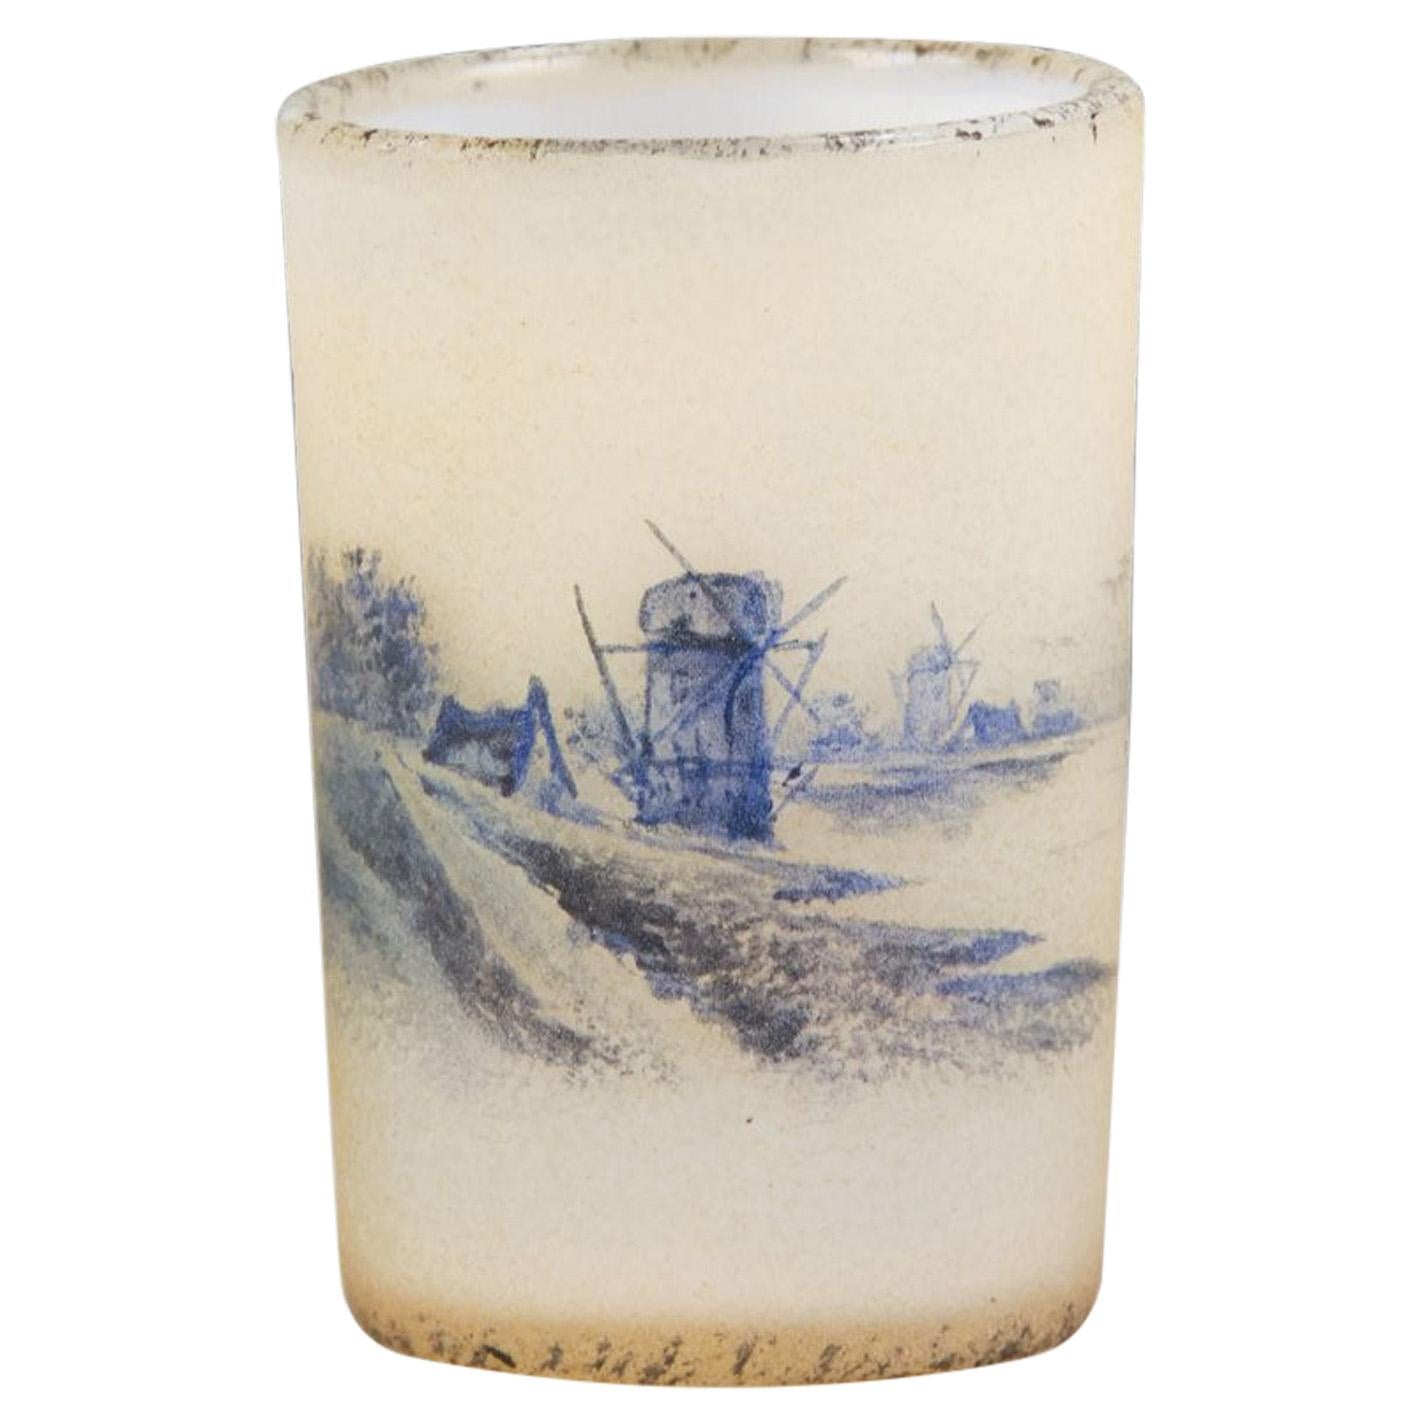 French Art Nouveau Miniature Glass Vase "Dutch Winter Landscape" by Daum Frères